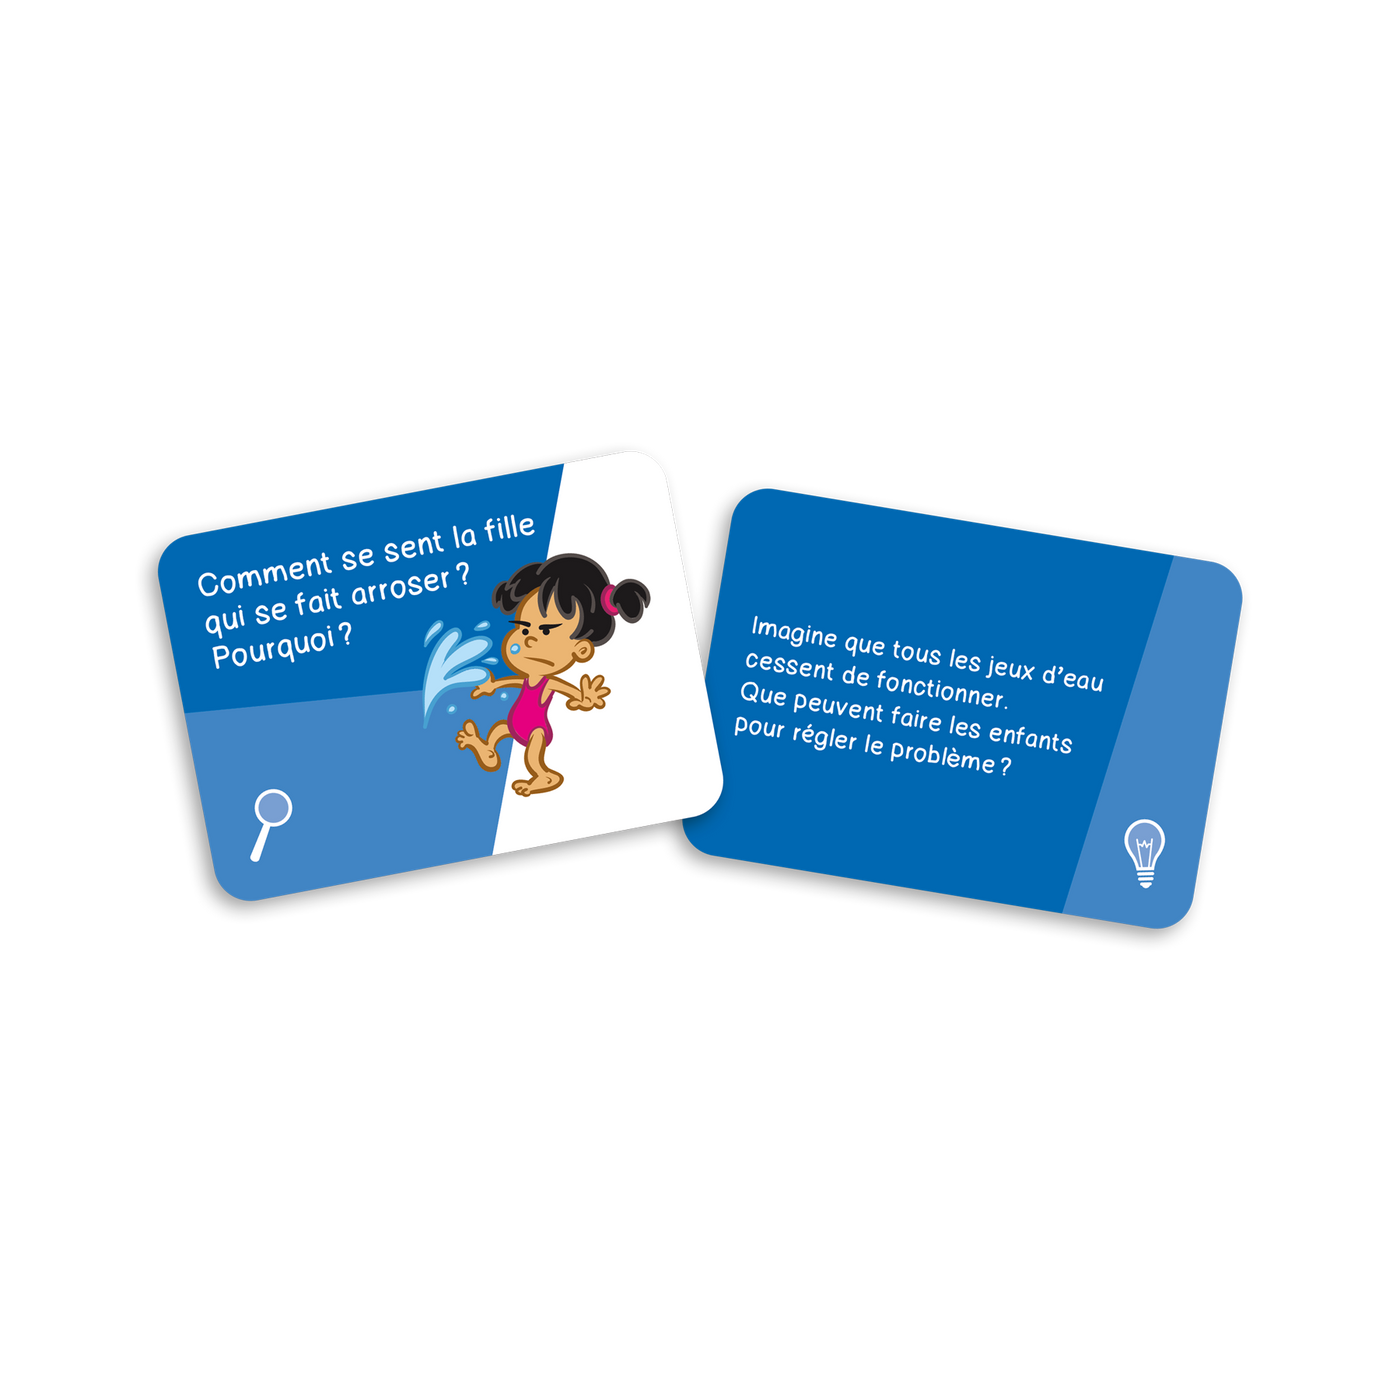 Raisonne au parc - Exemples de cartes-questions (cartes bleues, dont Comment se sent la fille qui se fait arroser? Pourquoi?)